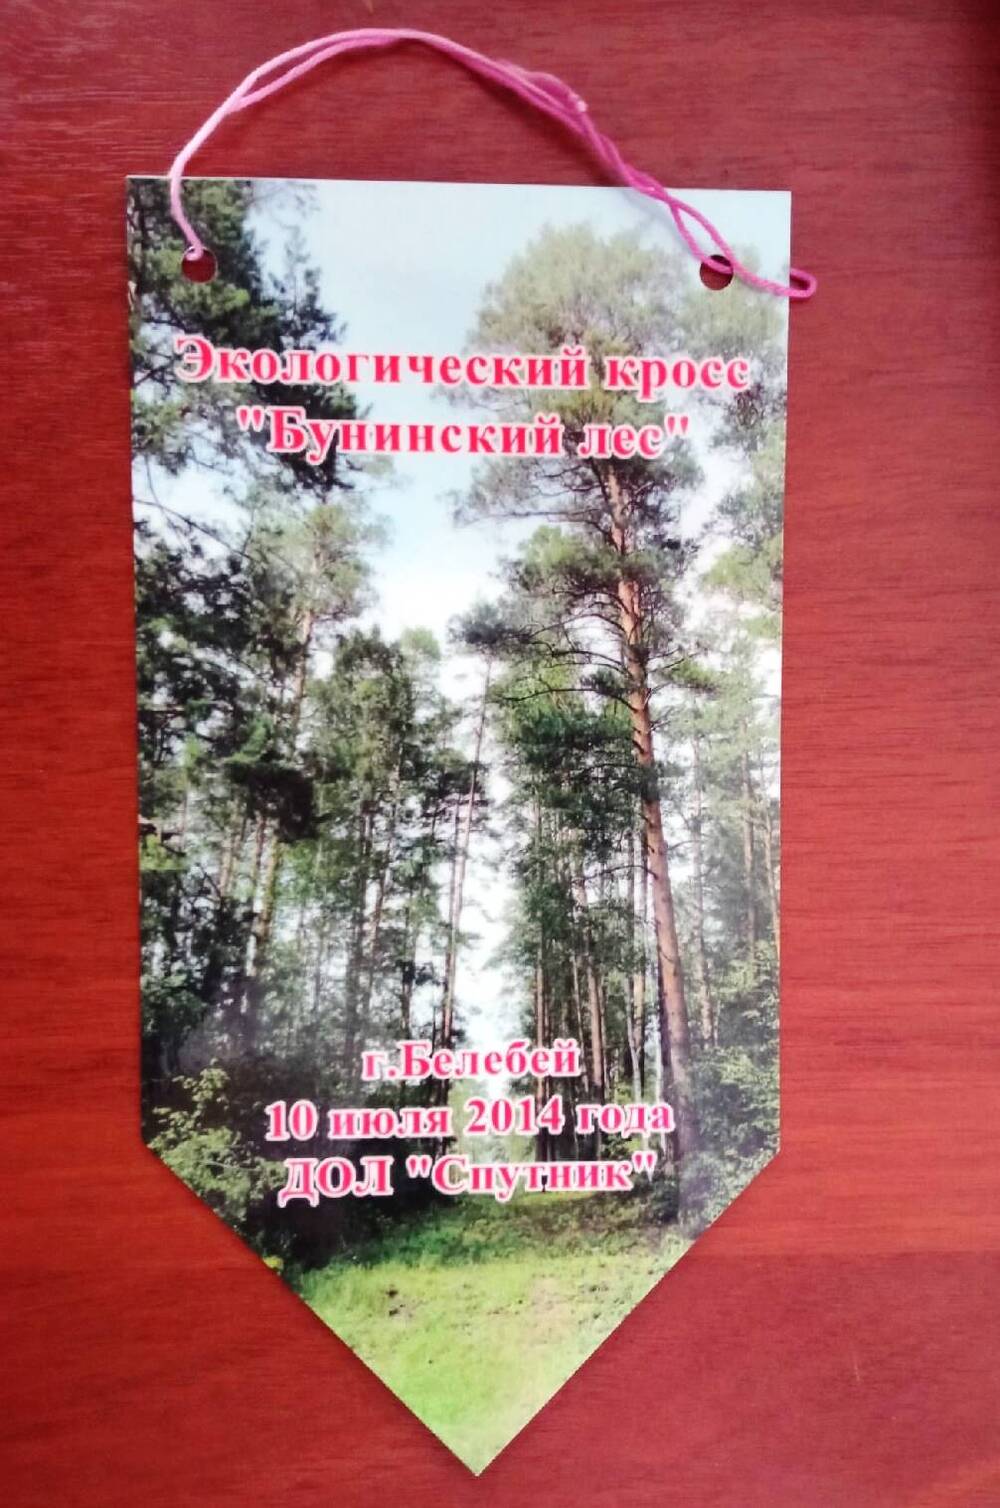 Вымпел экологического кросса «Бунинский лес»